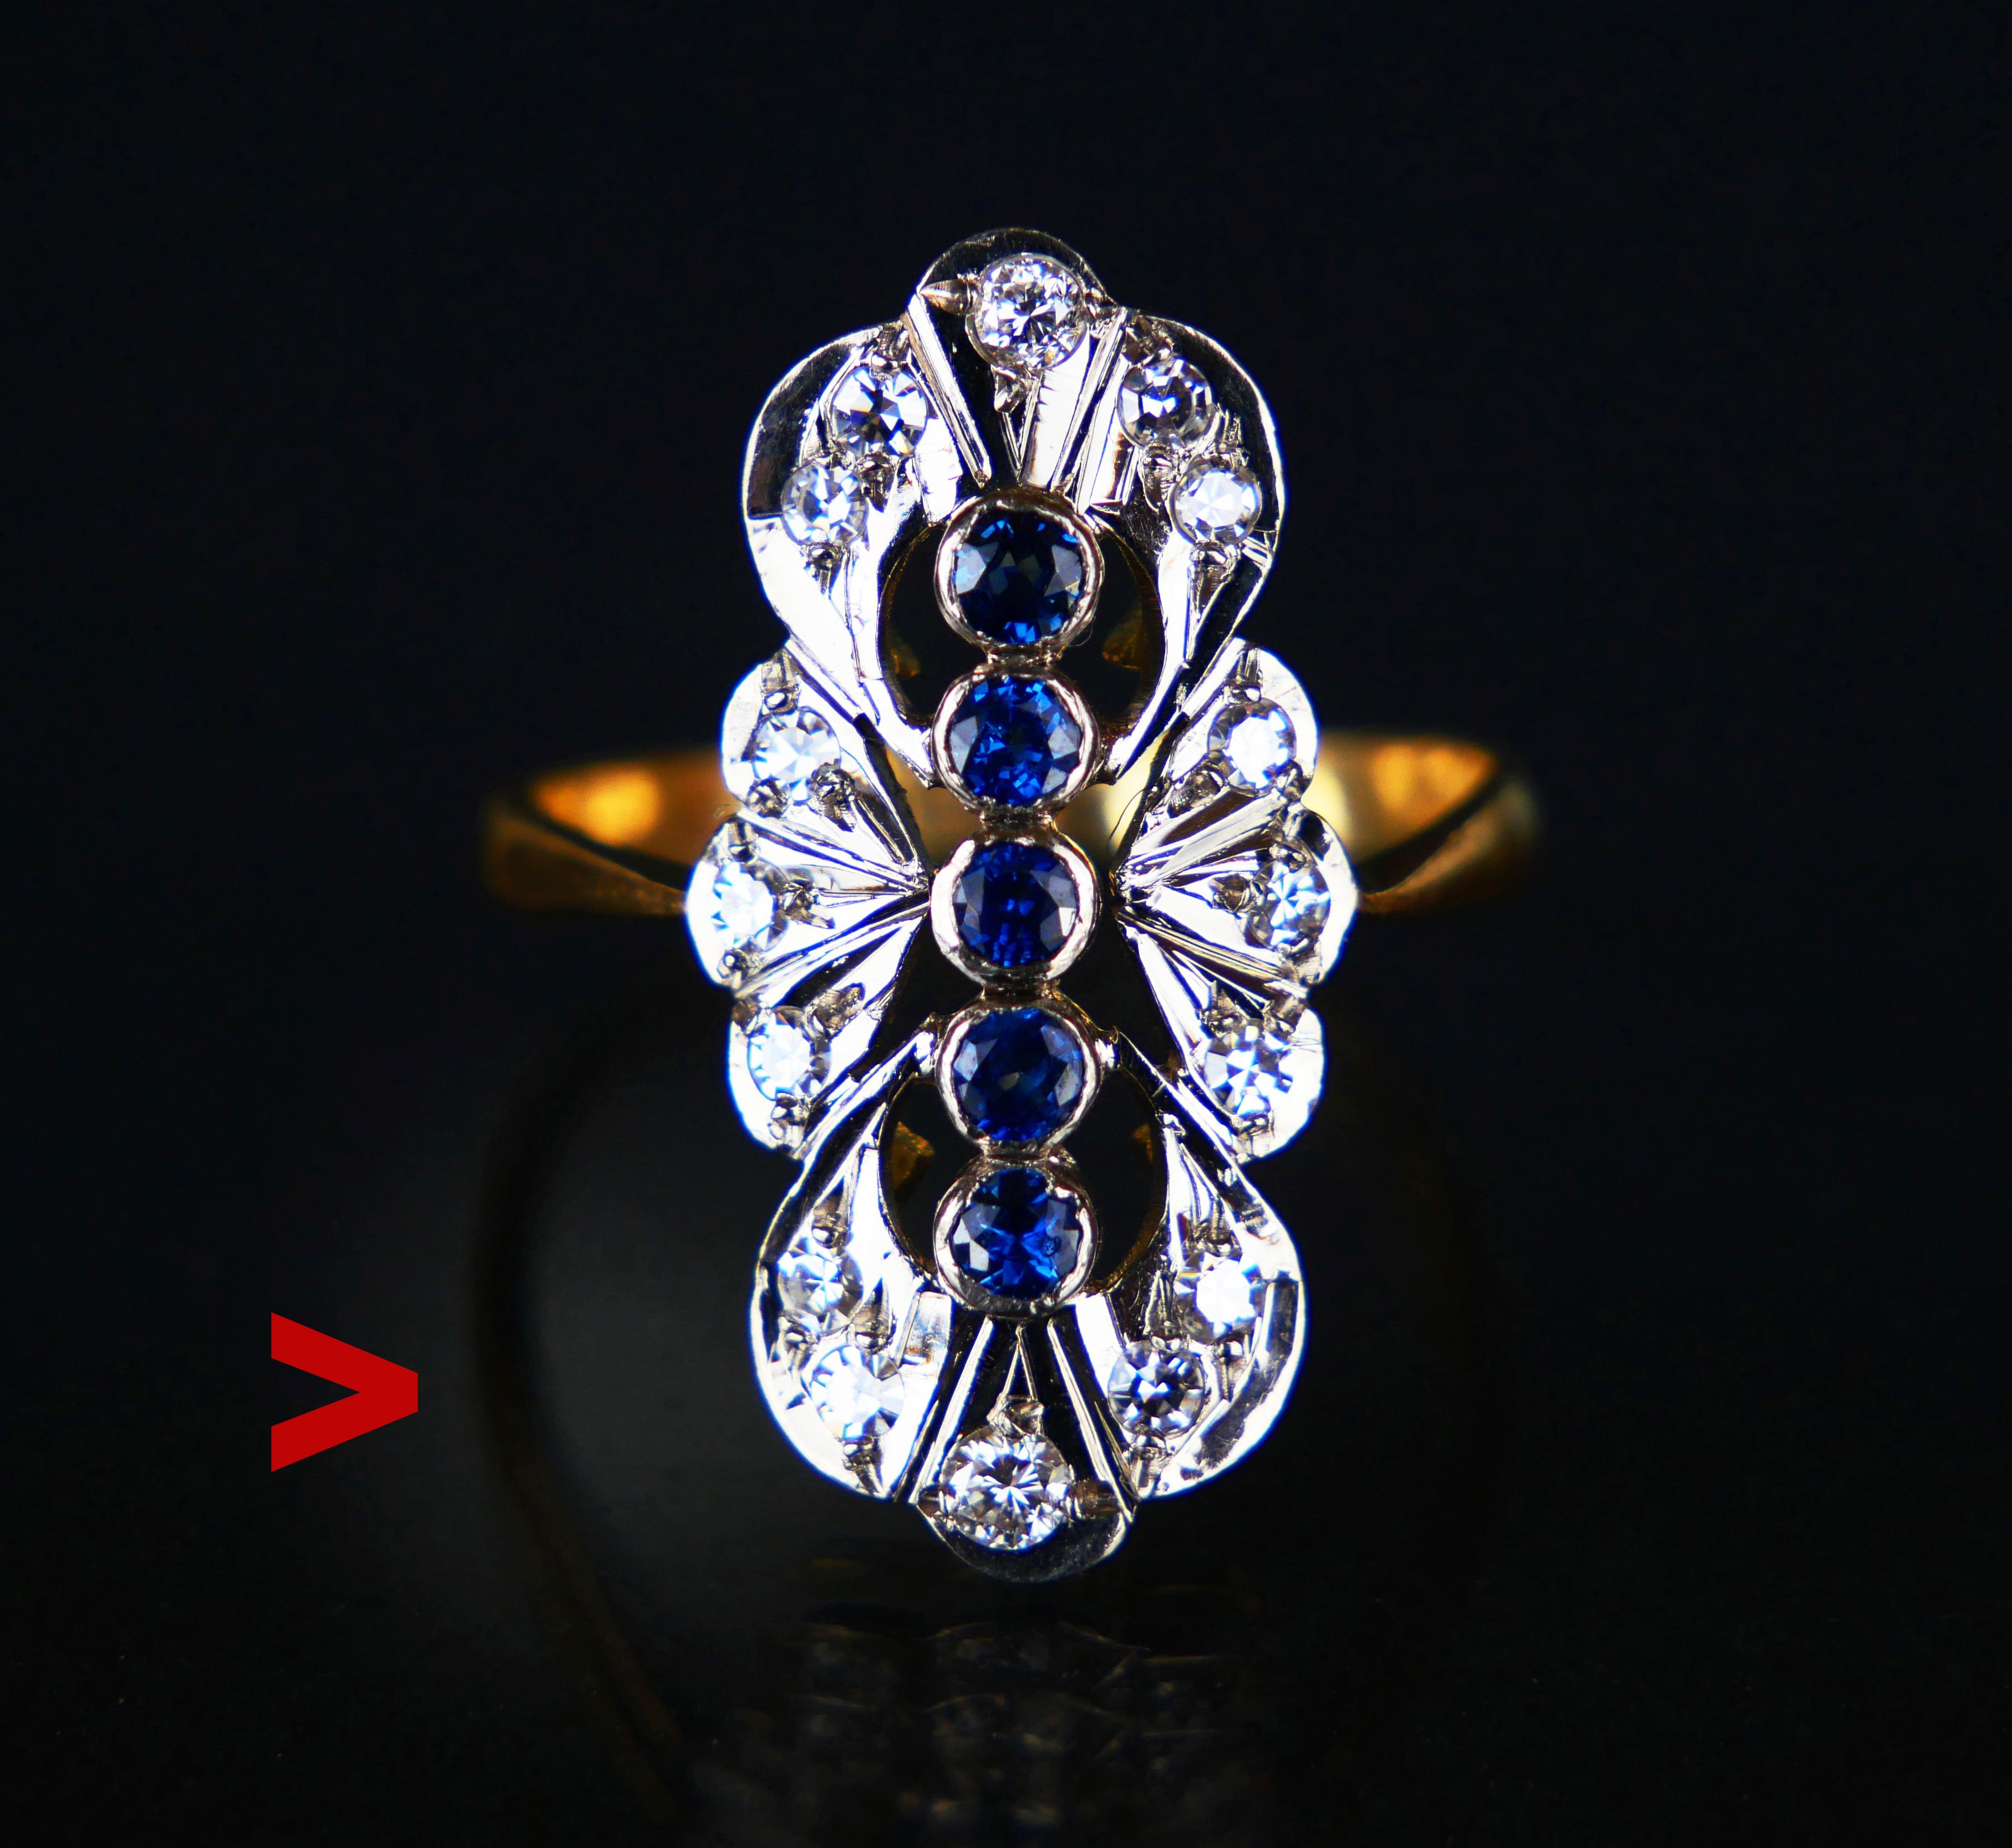 Dieser Ring hat eine schöne Anordnung von natürlichen Saphiren und Diamanten auf einer durchbrochenen navette oder bootförmigen Krone mit Platin Clustern in einem massiven 18K Gelbgold Basis geschmolzen gesetzt.

Schwedische Importpunzen, gestempelt